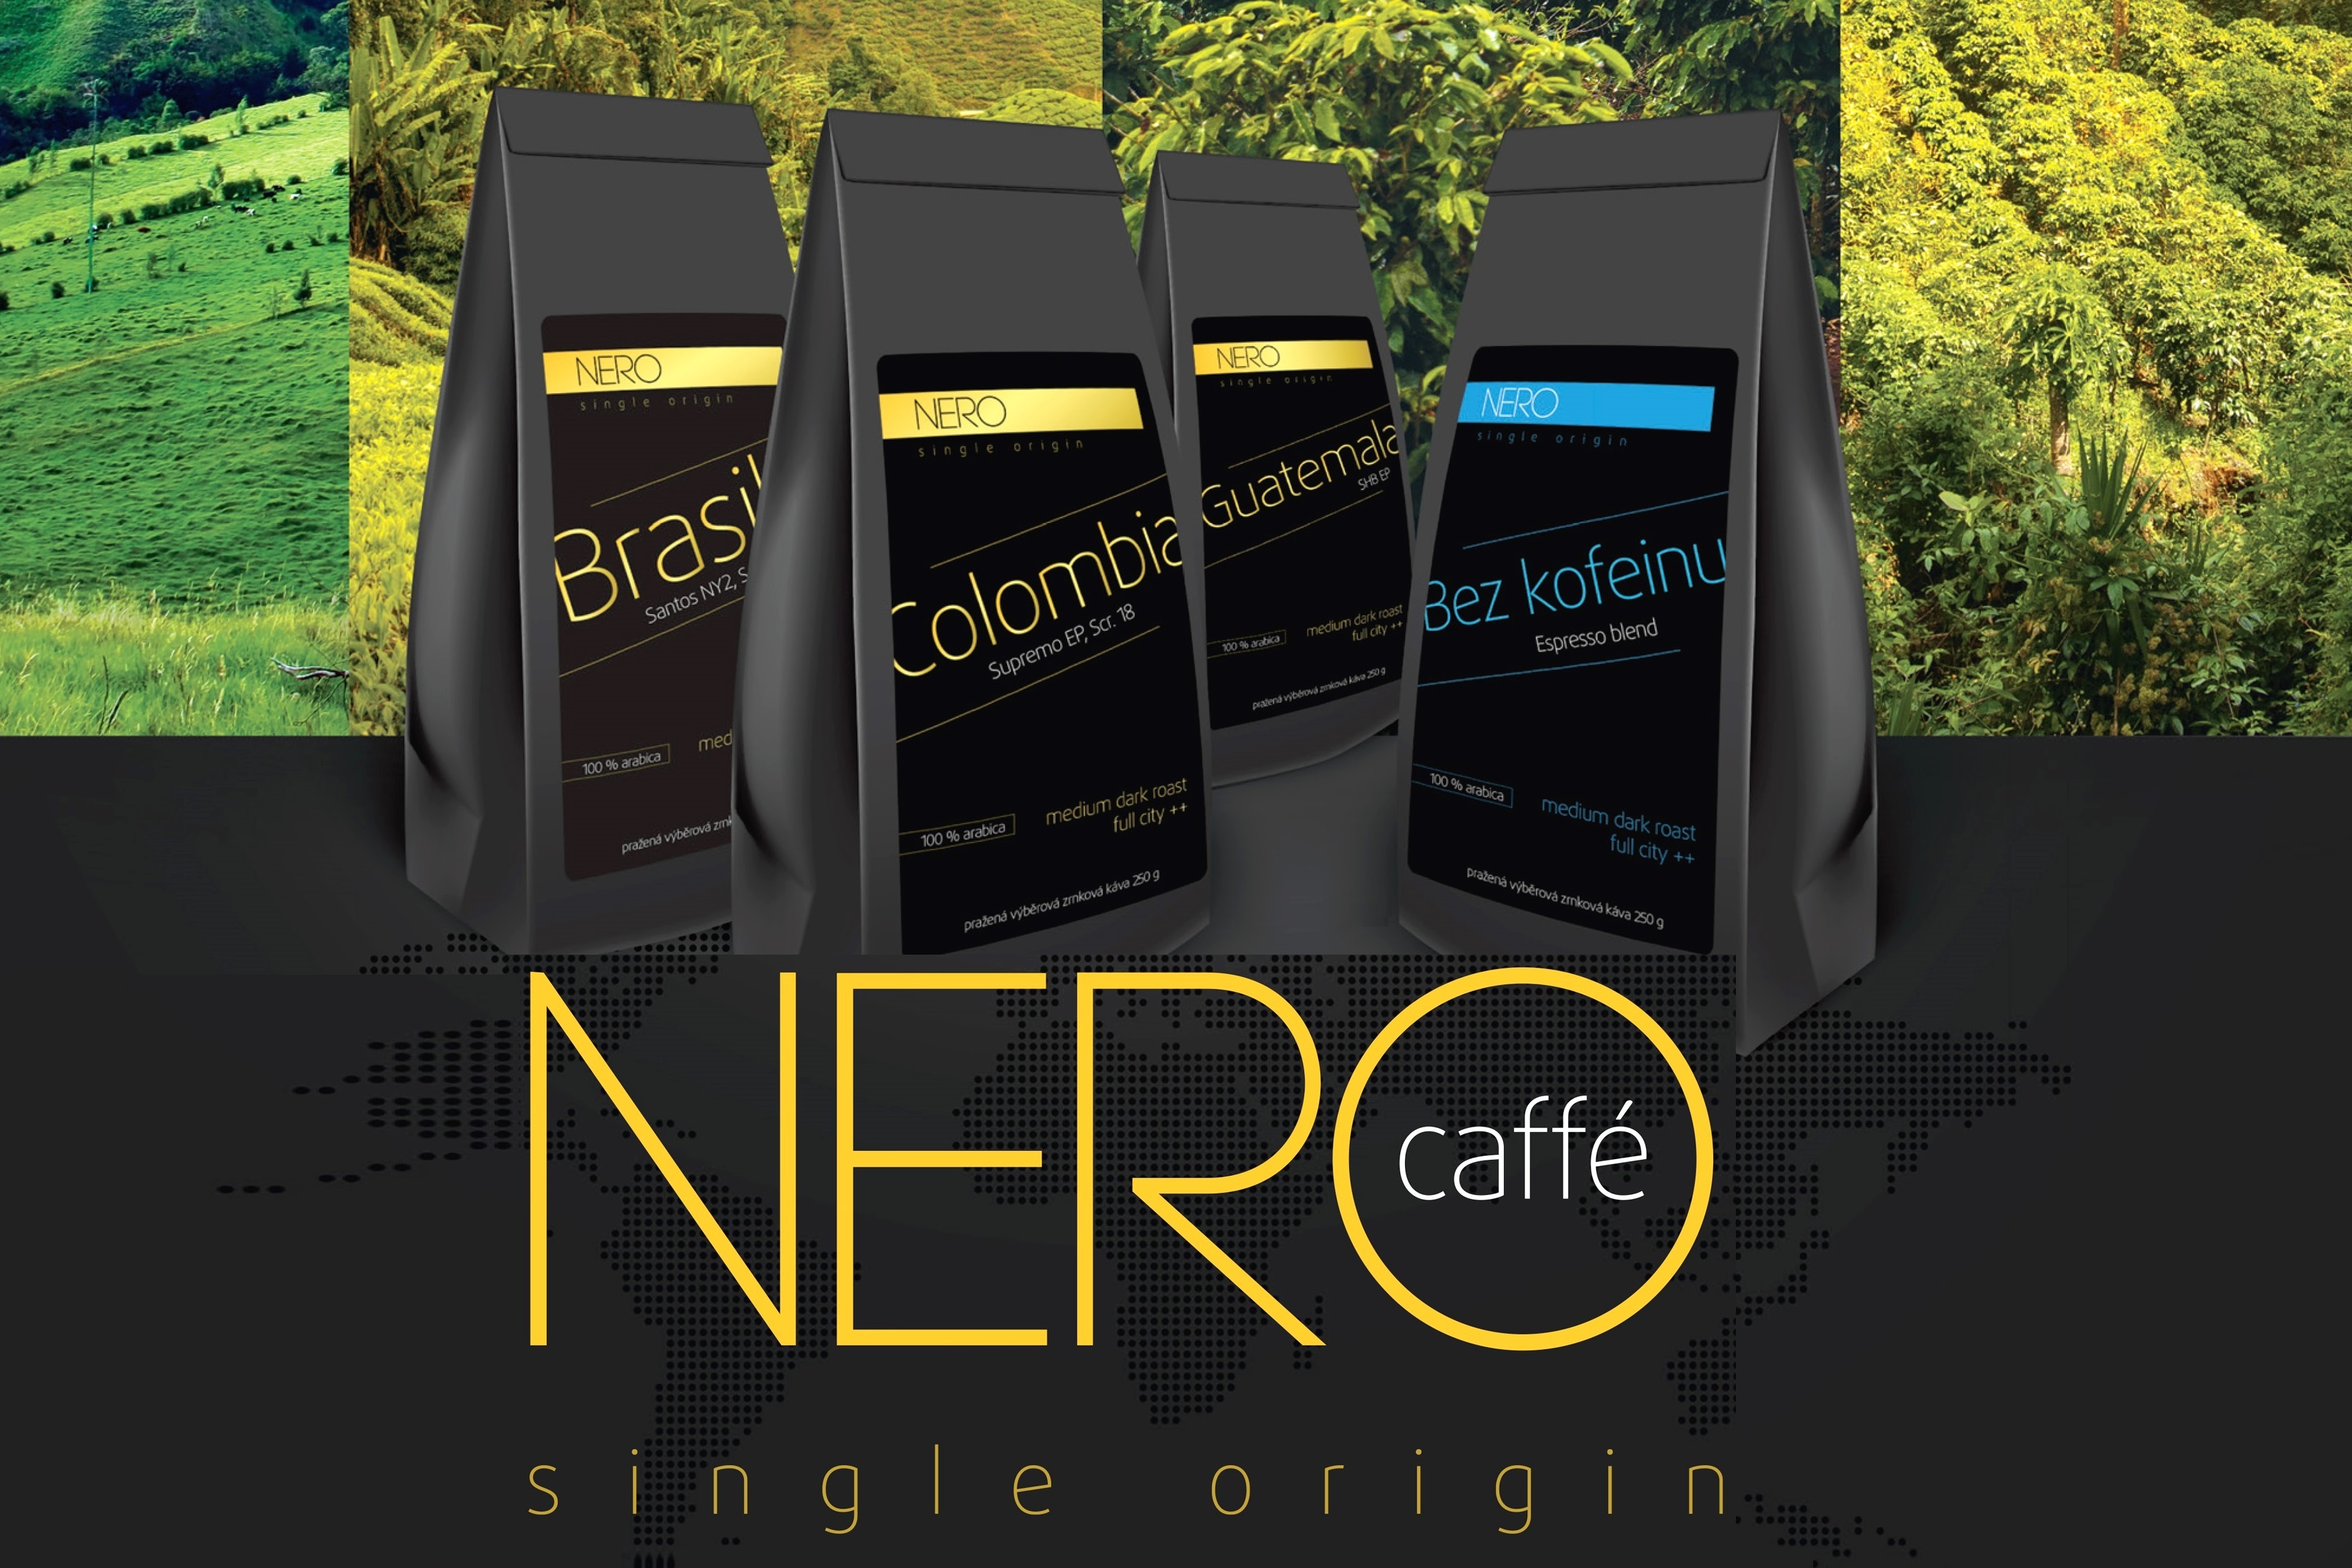 Procestujte s kávou NERO celý svět 